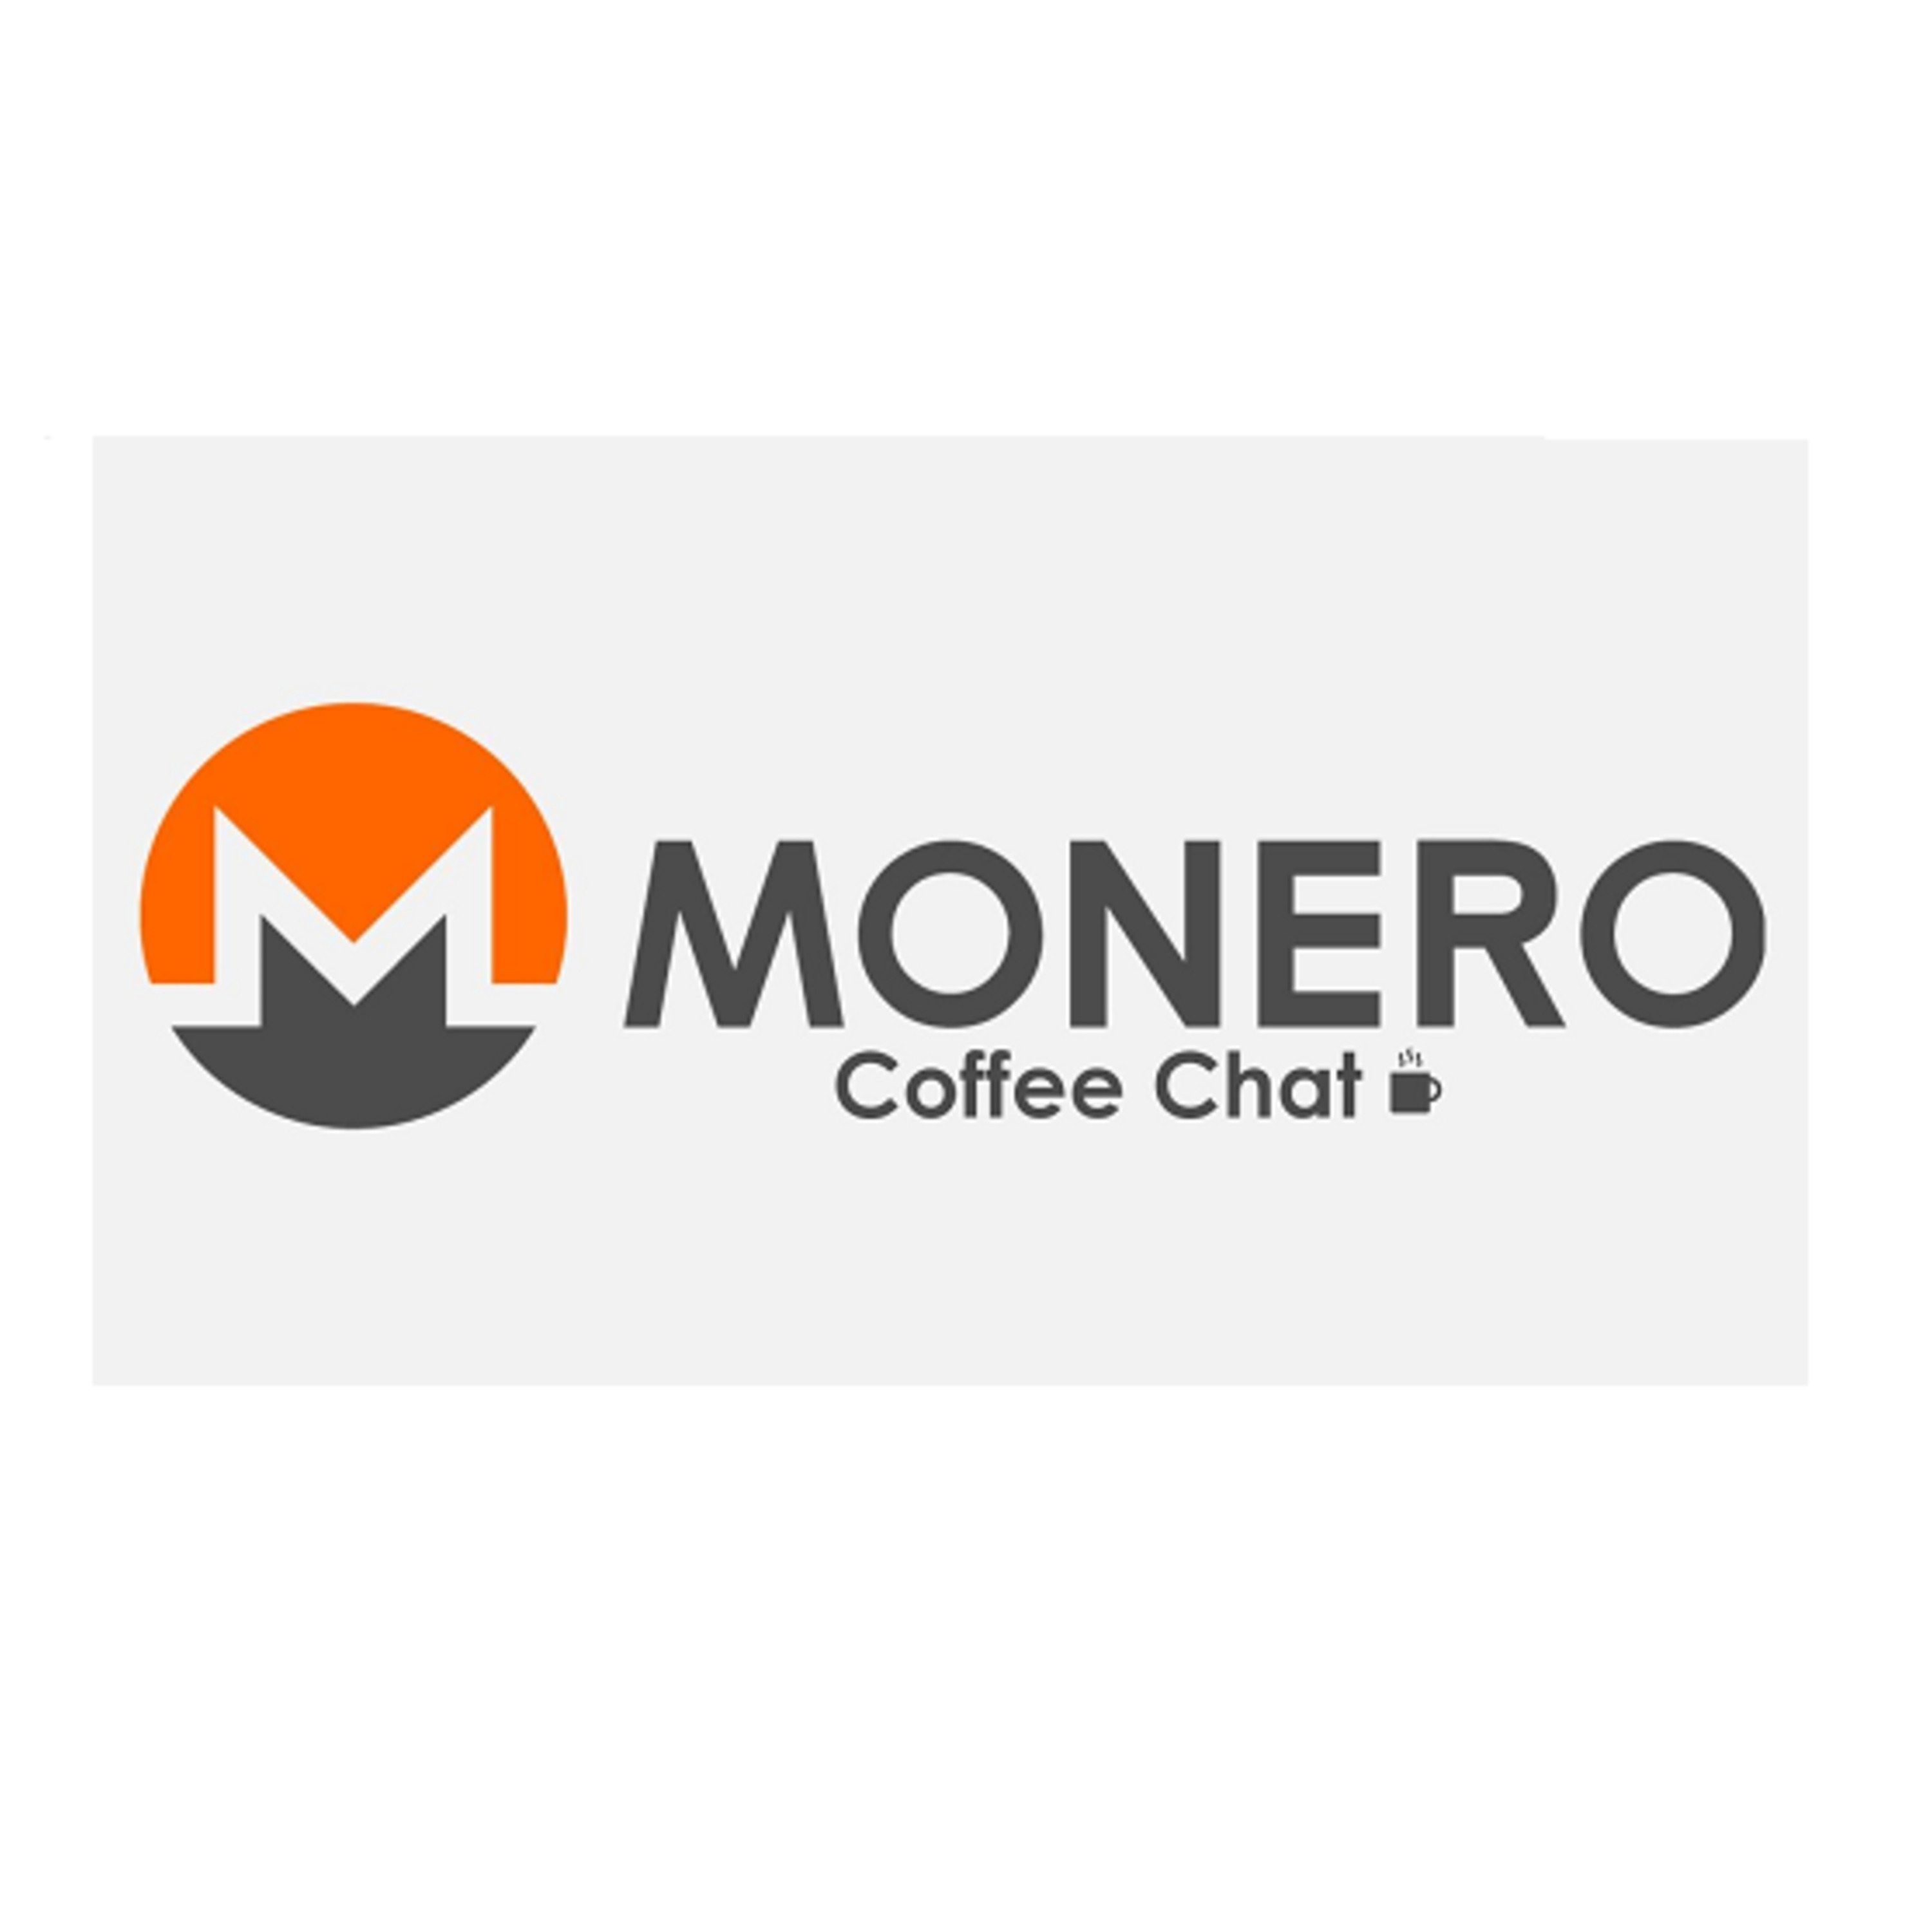 Monero Coffee Chat - 2019.08.23